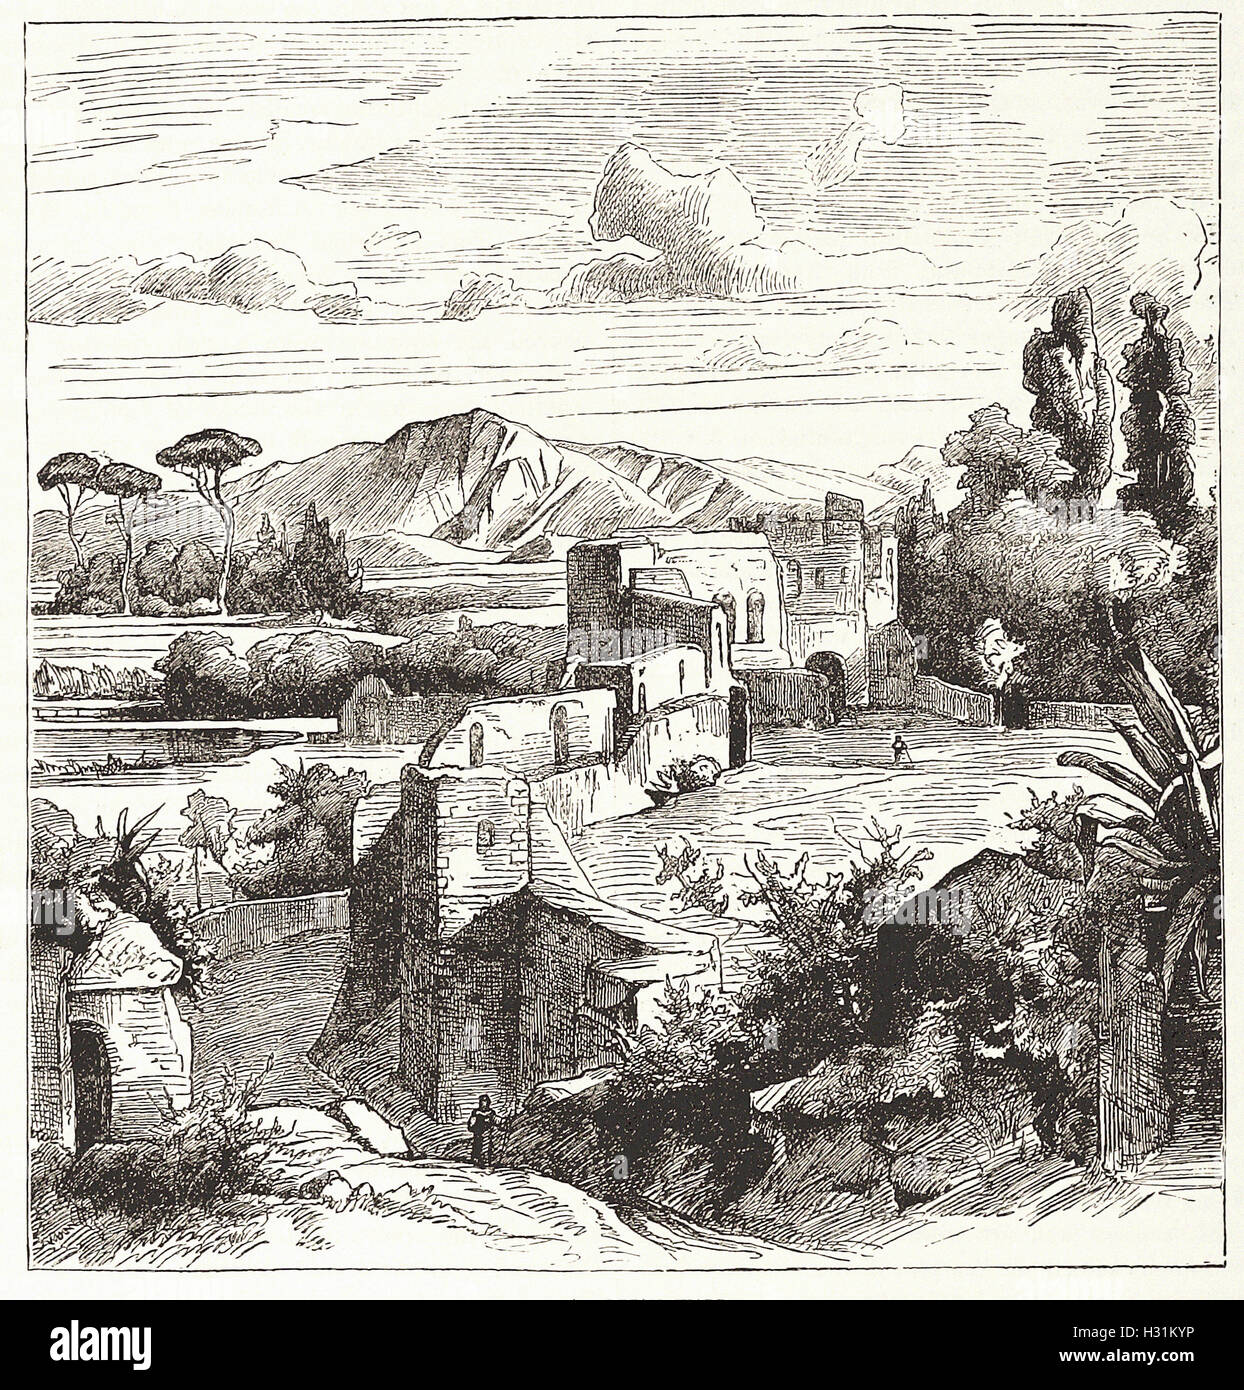 Le mur d'Aurélien. Avec une partie de la Campagna, et les montagnes en arrière-plan de Sabine - de 'Cassell's Illustrated Histoire universelle" - 1882 Banque D'Images